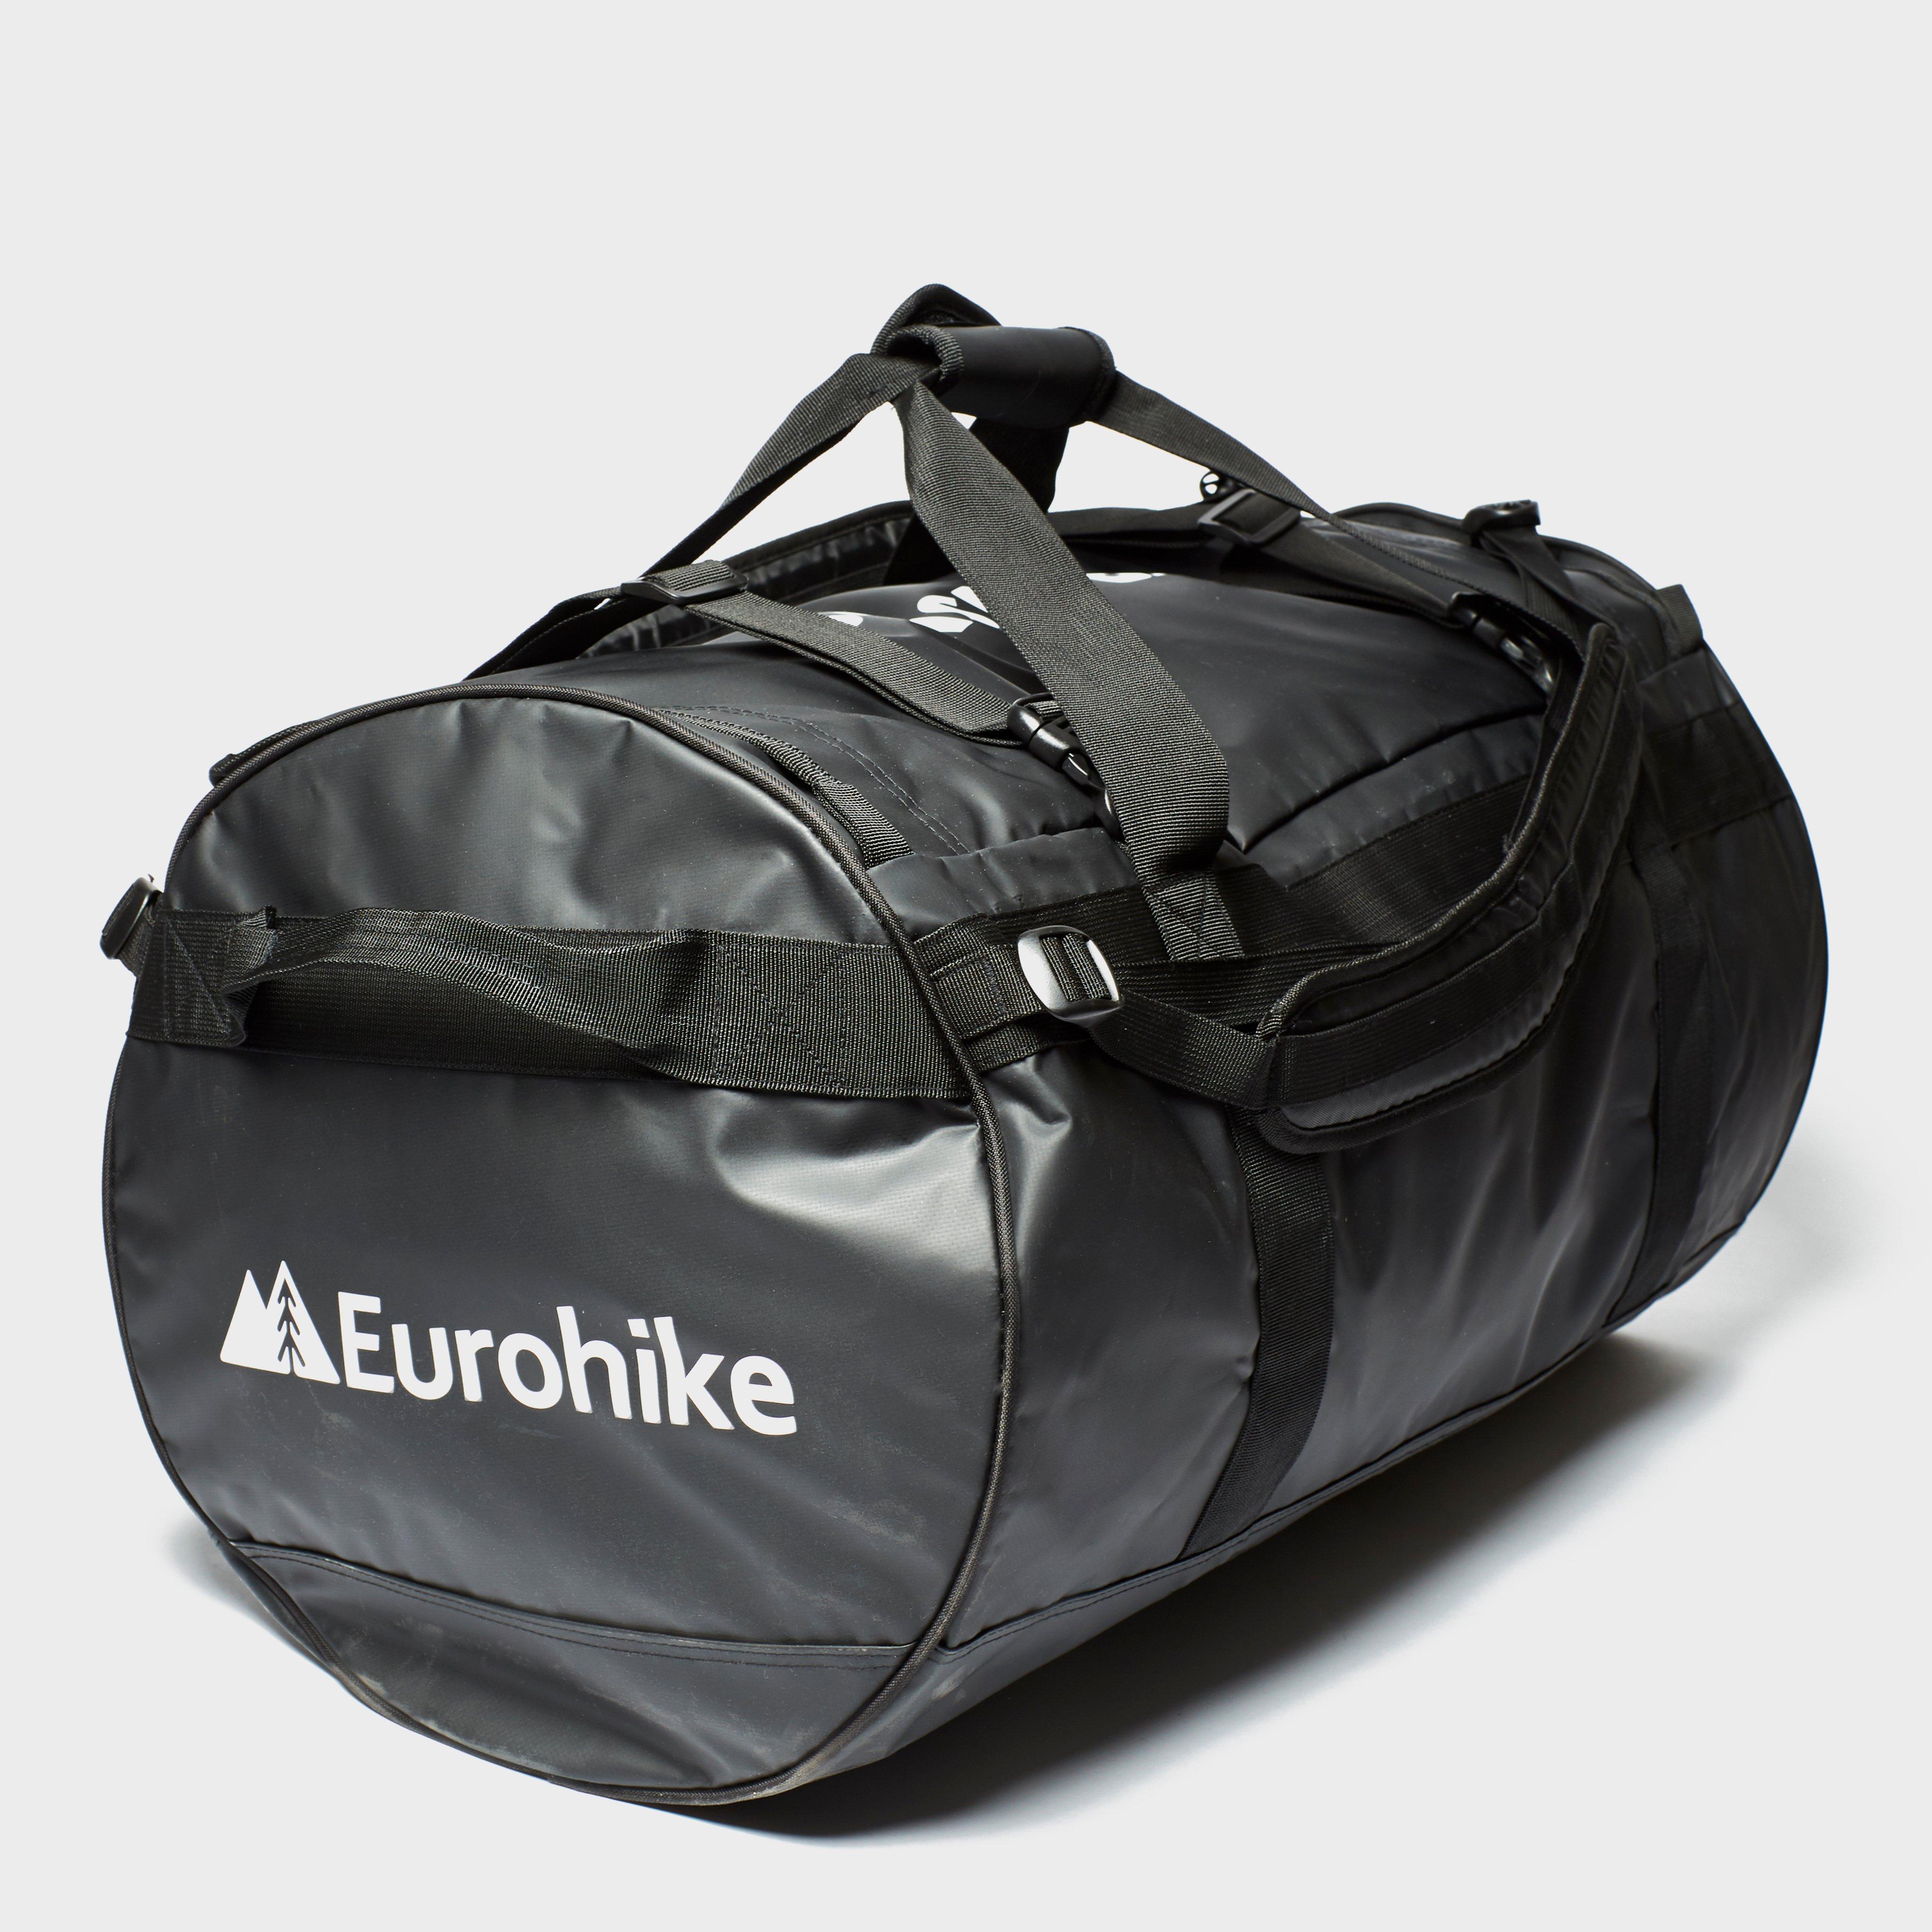 Eurohike Eurohike Transit 90L Cargo Bag - Black, Black